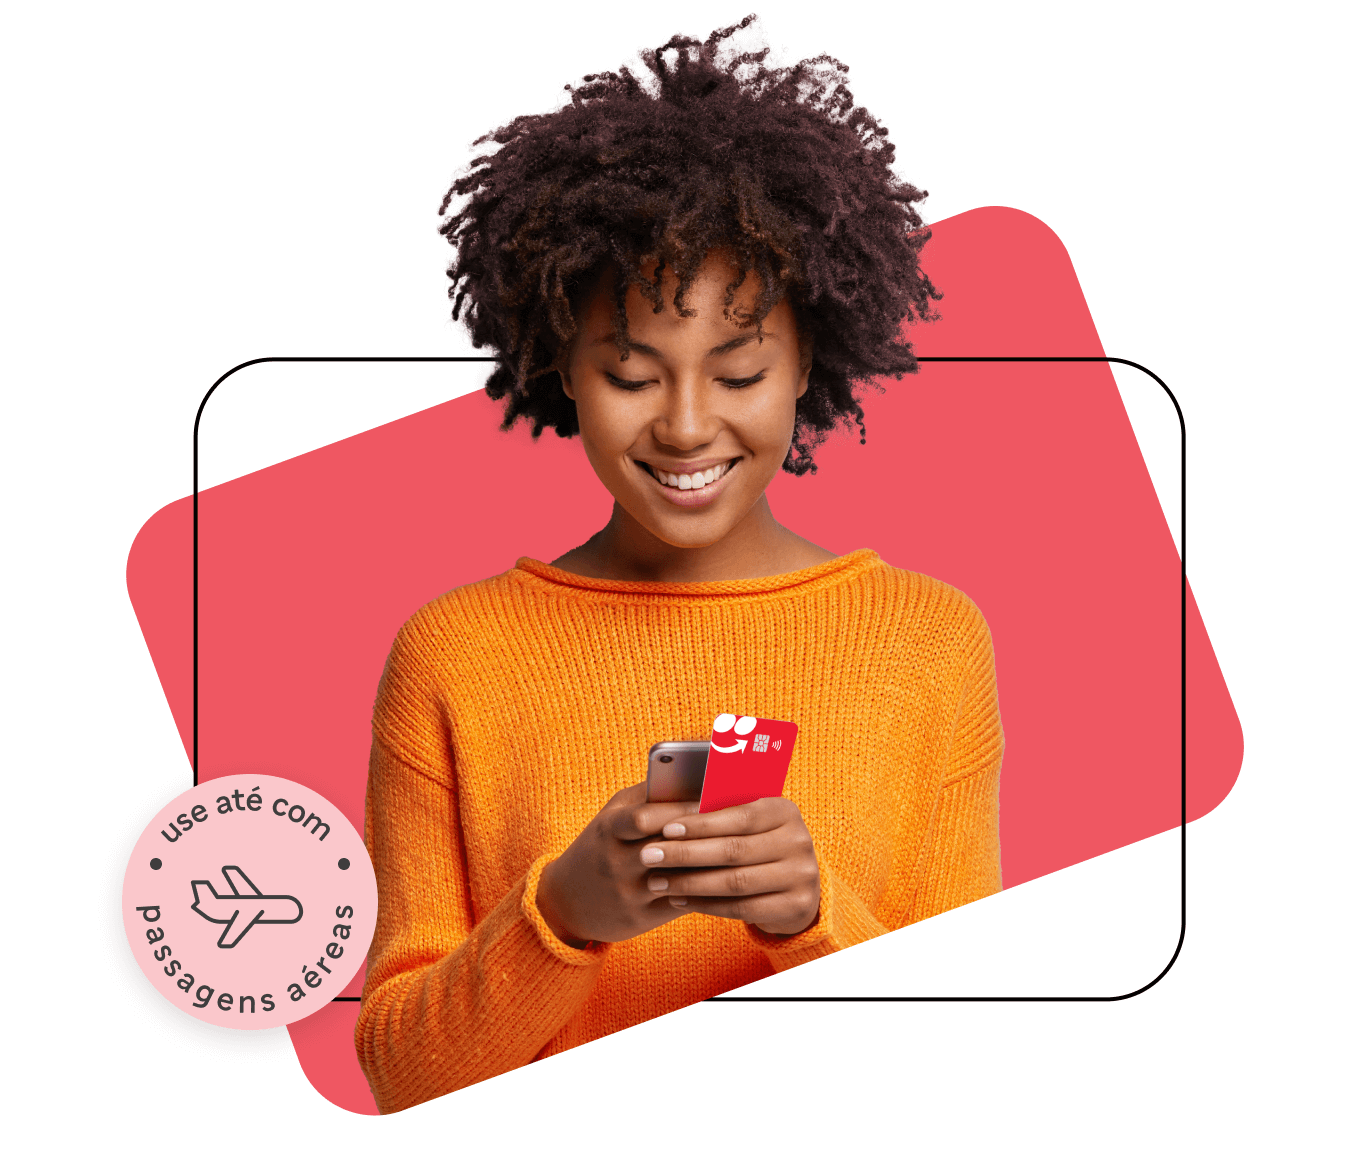 Mulher feliz escolhendo ofertas no celular. Um selo acima da imagem mostrando que iFood Benefícios pode ser utilizado até com passagens aéreas.